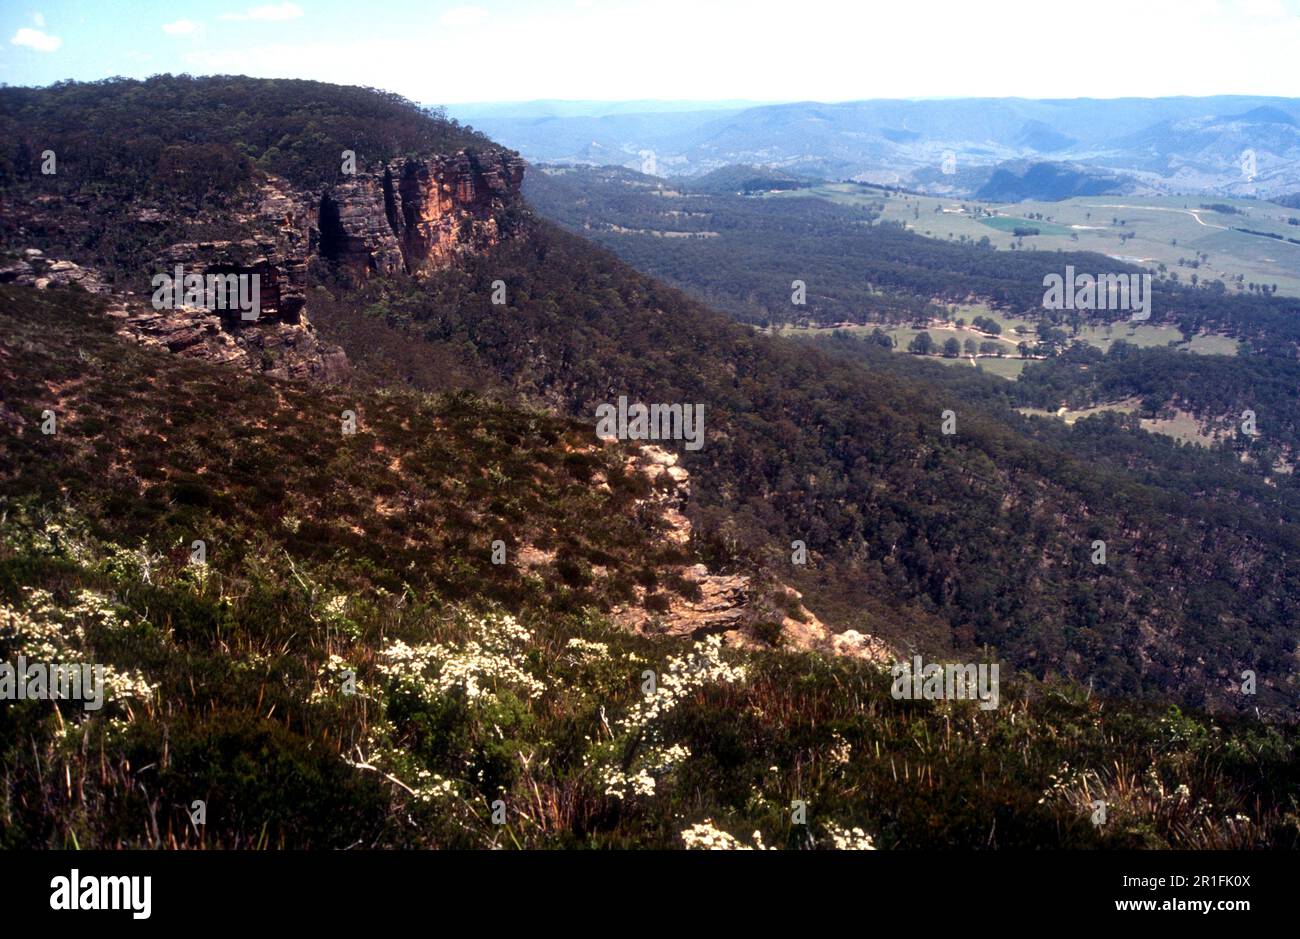 The Great Dividing Range escarpment with plains beyond, Blue Mountains, NSW Australia Stock Photo